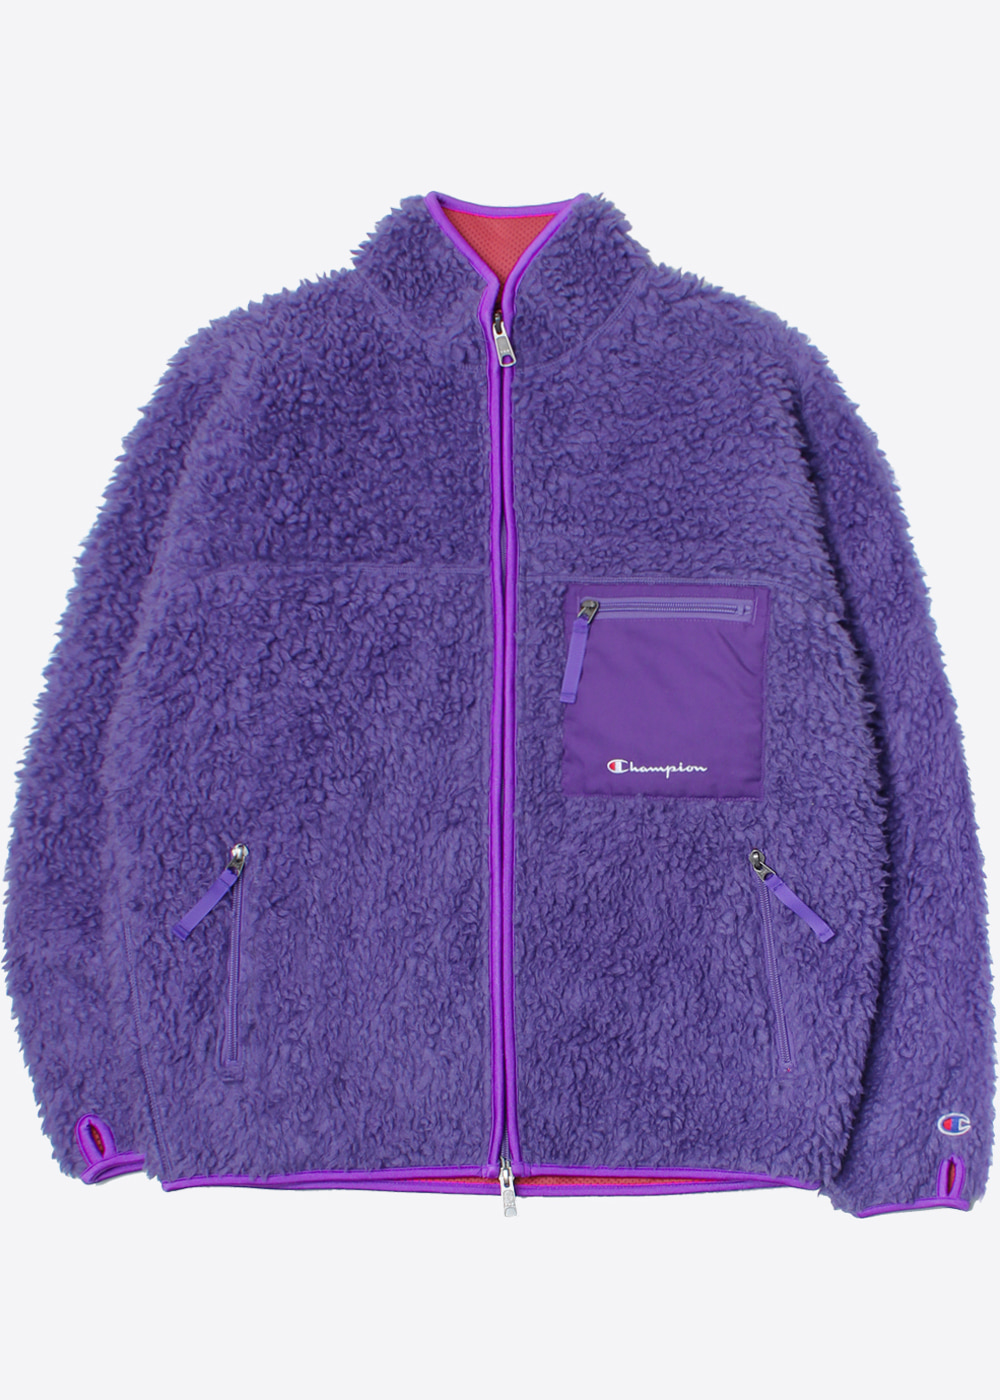 CHAMPION X FREAK’S STORE’over fit’fleece zip up jacket